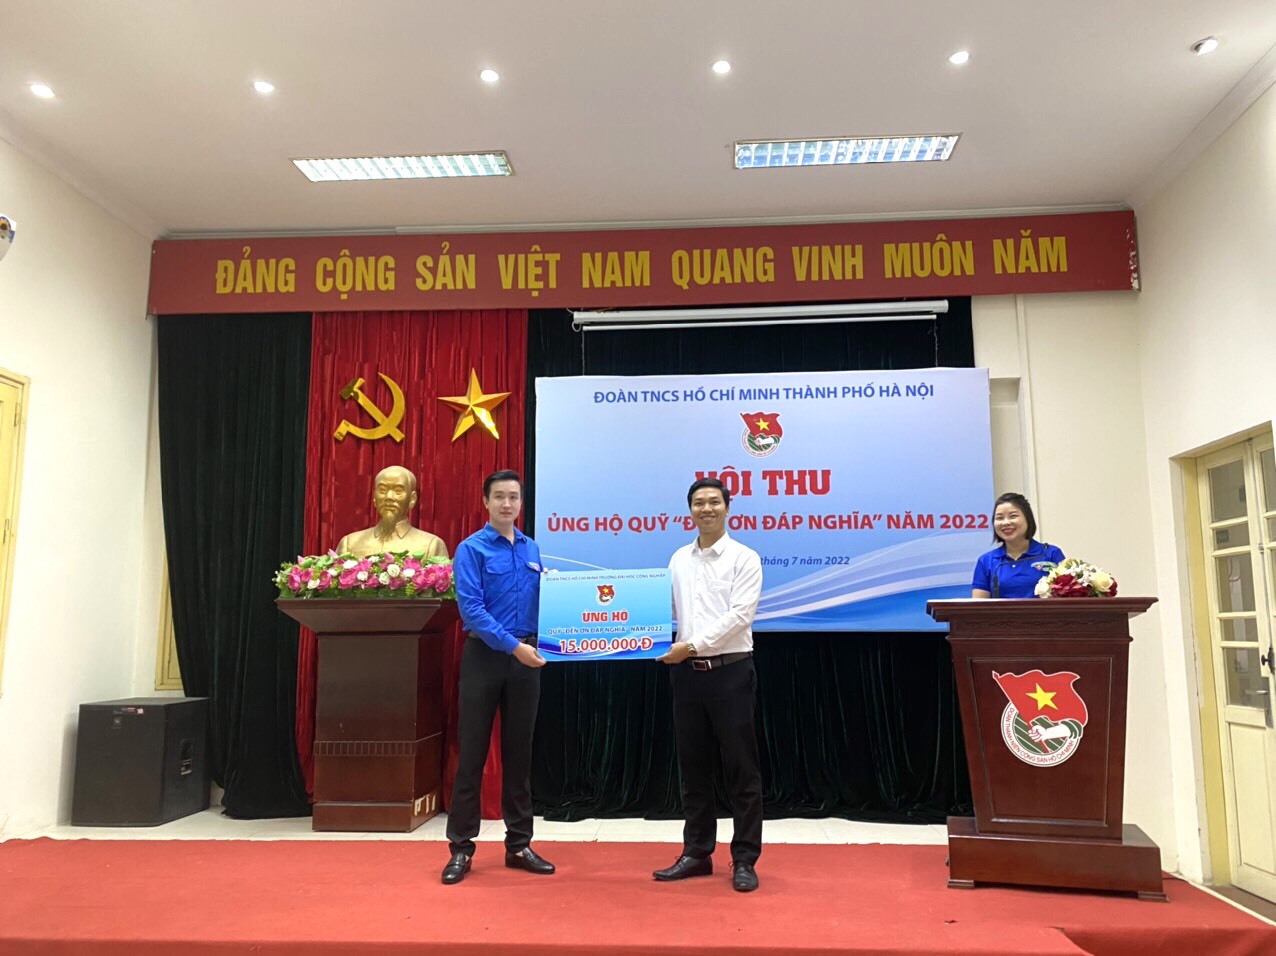 Đoàn trường Đại học Công nghiệp Hà Nội ủng hộ Quỹ Đền ơn đáp nghĩa năm 2022